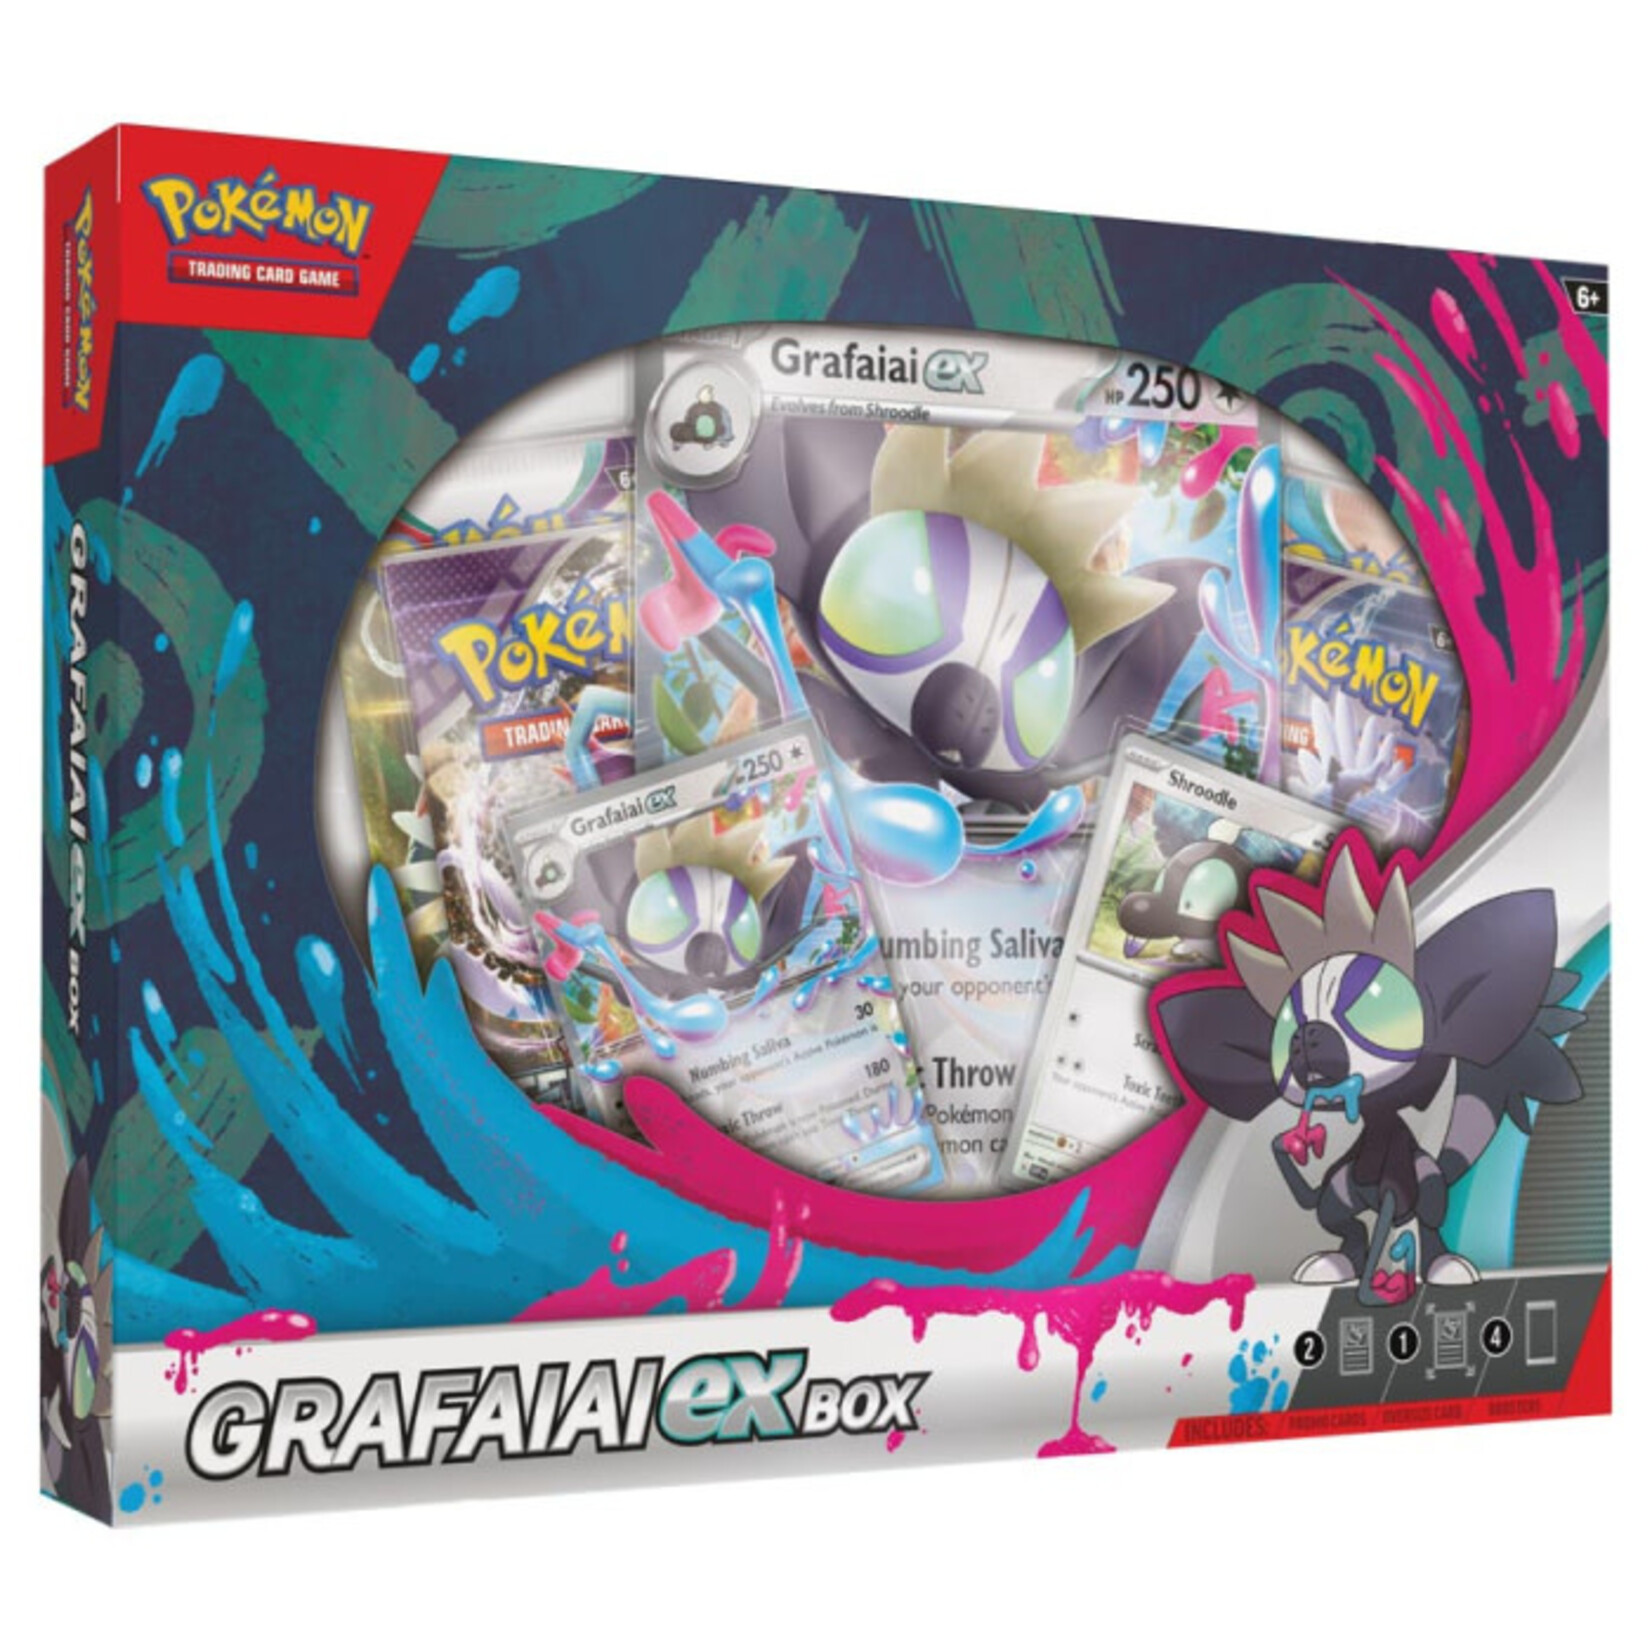 Pokémon Pokémon Trading Card Game: Grafaiai ex Box